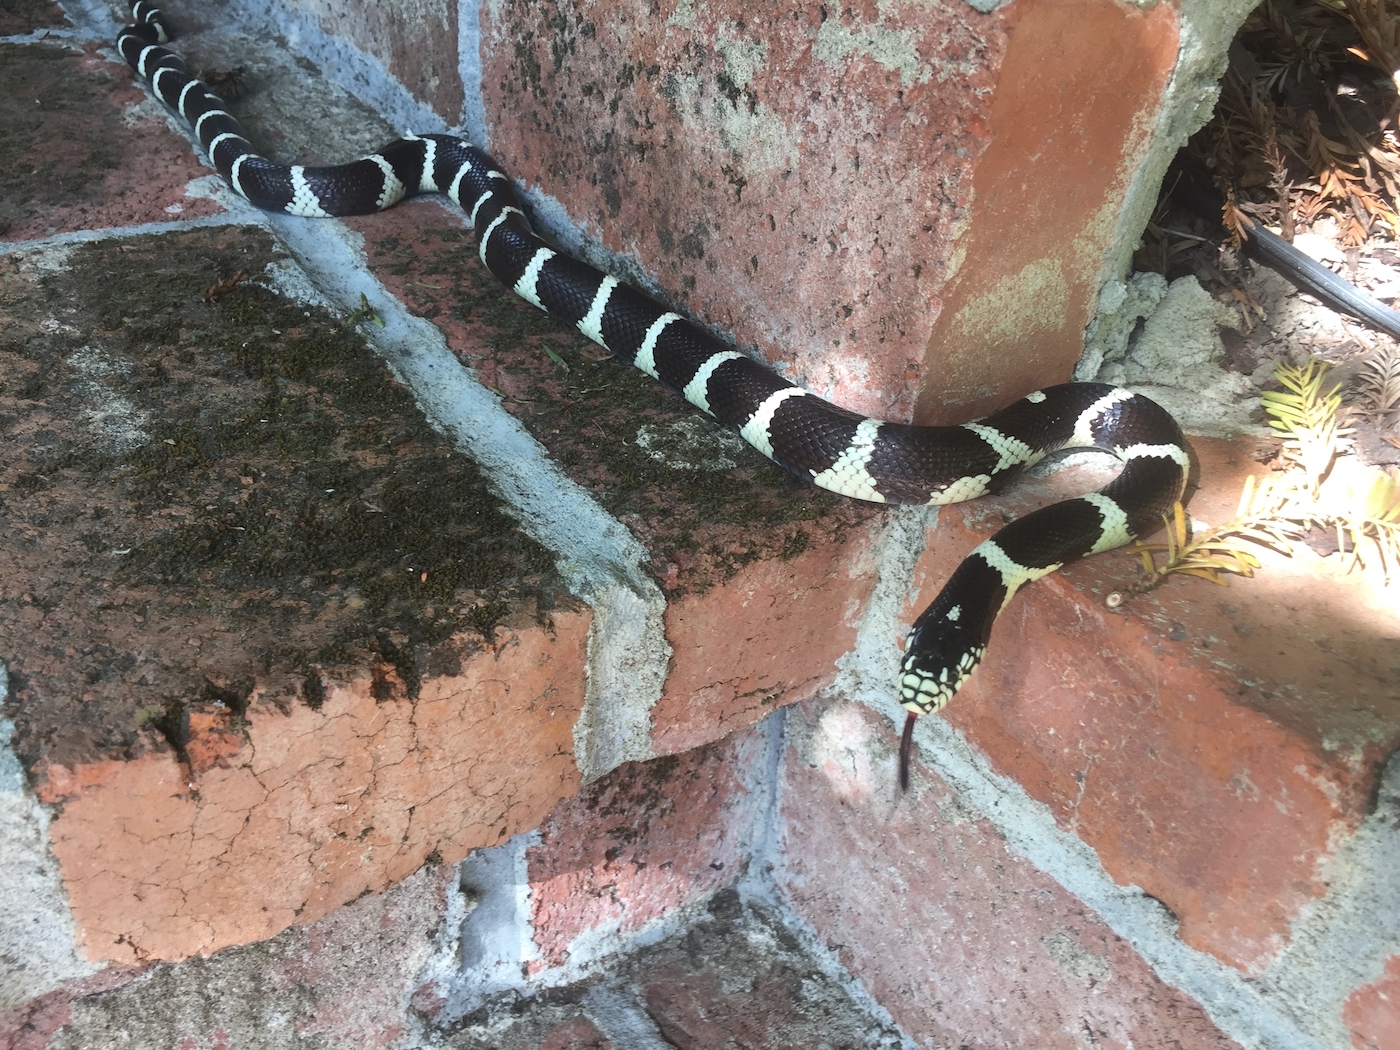 king snake in garden.jpg